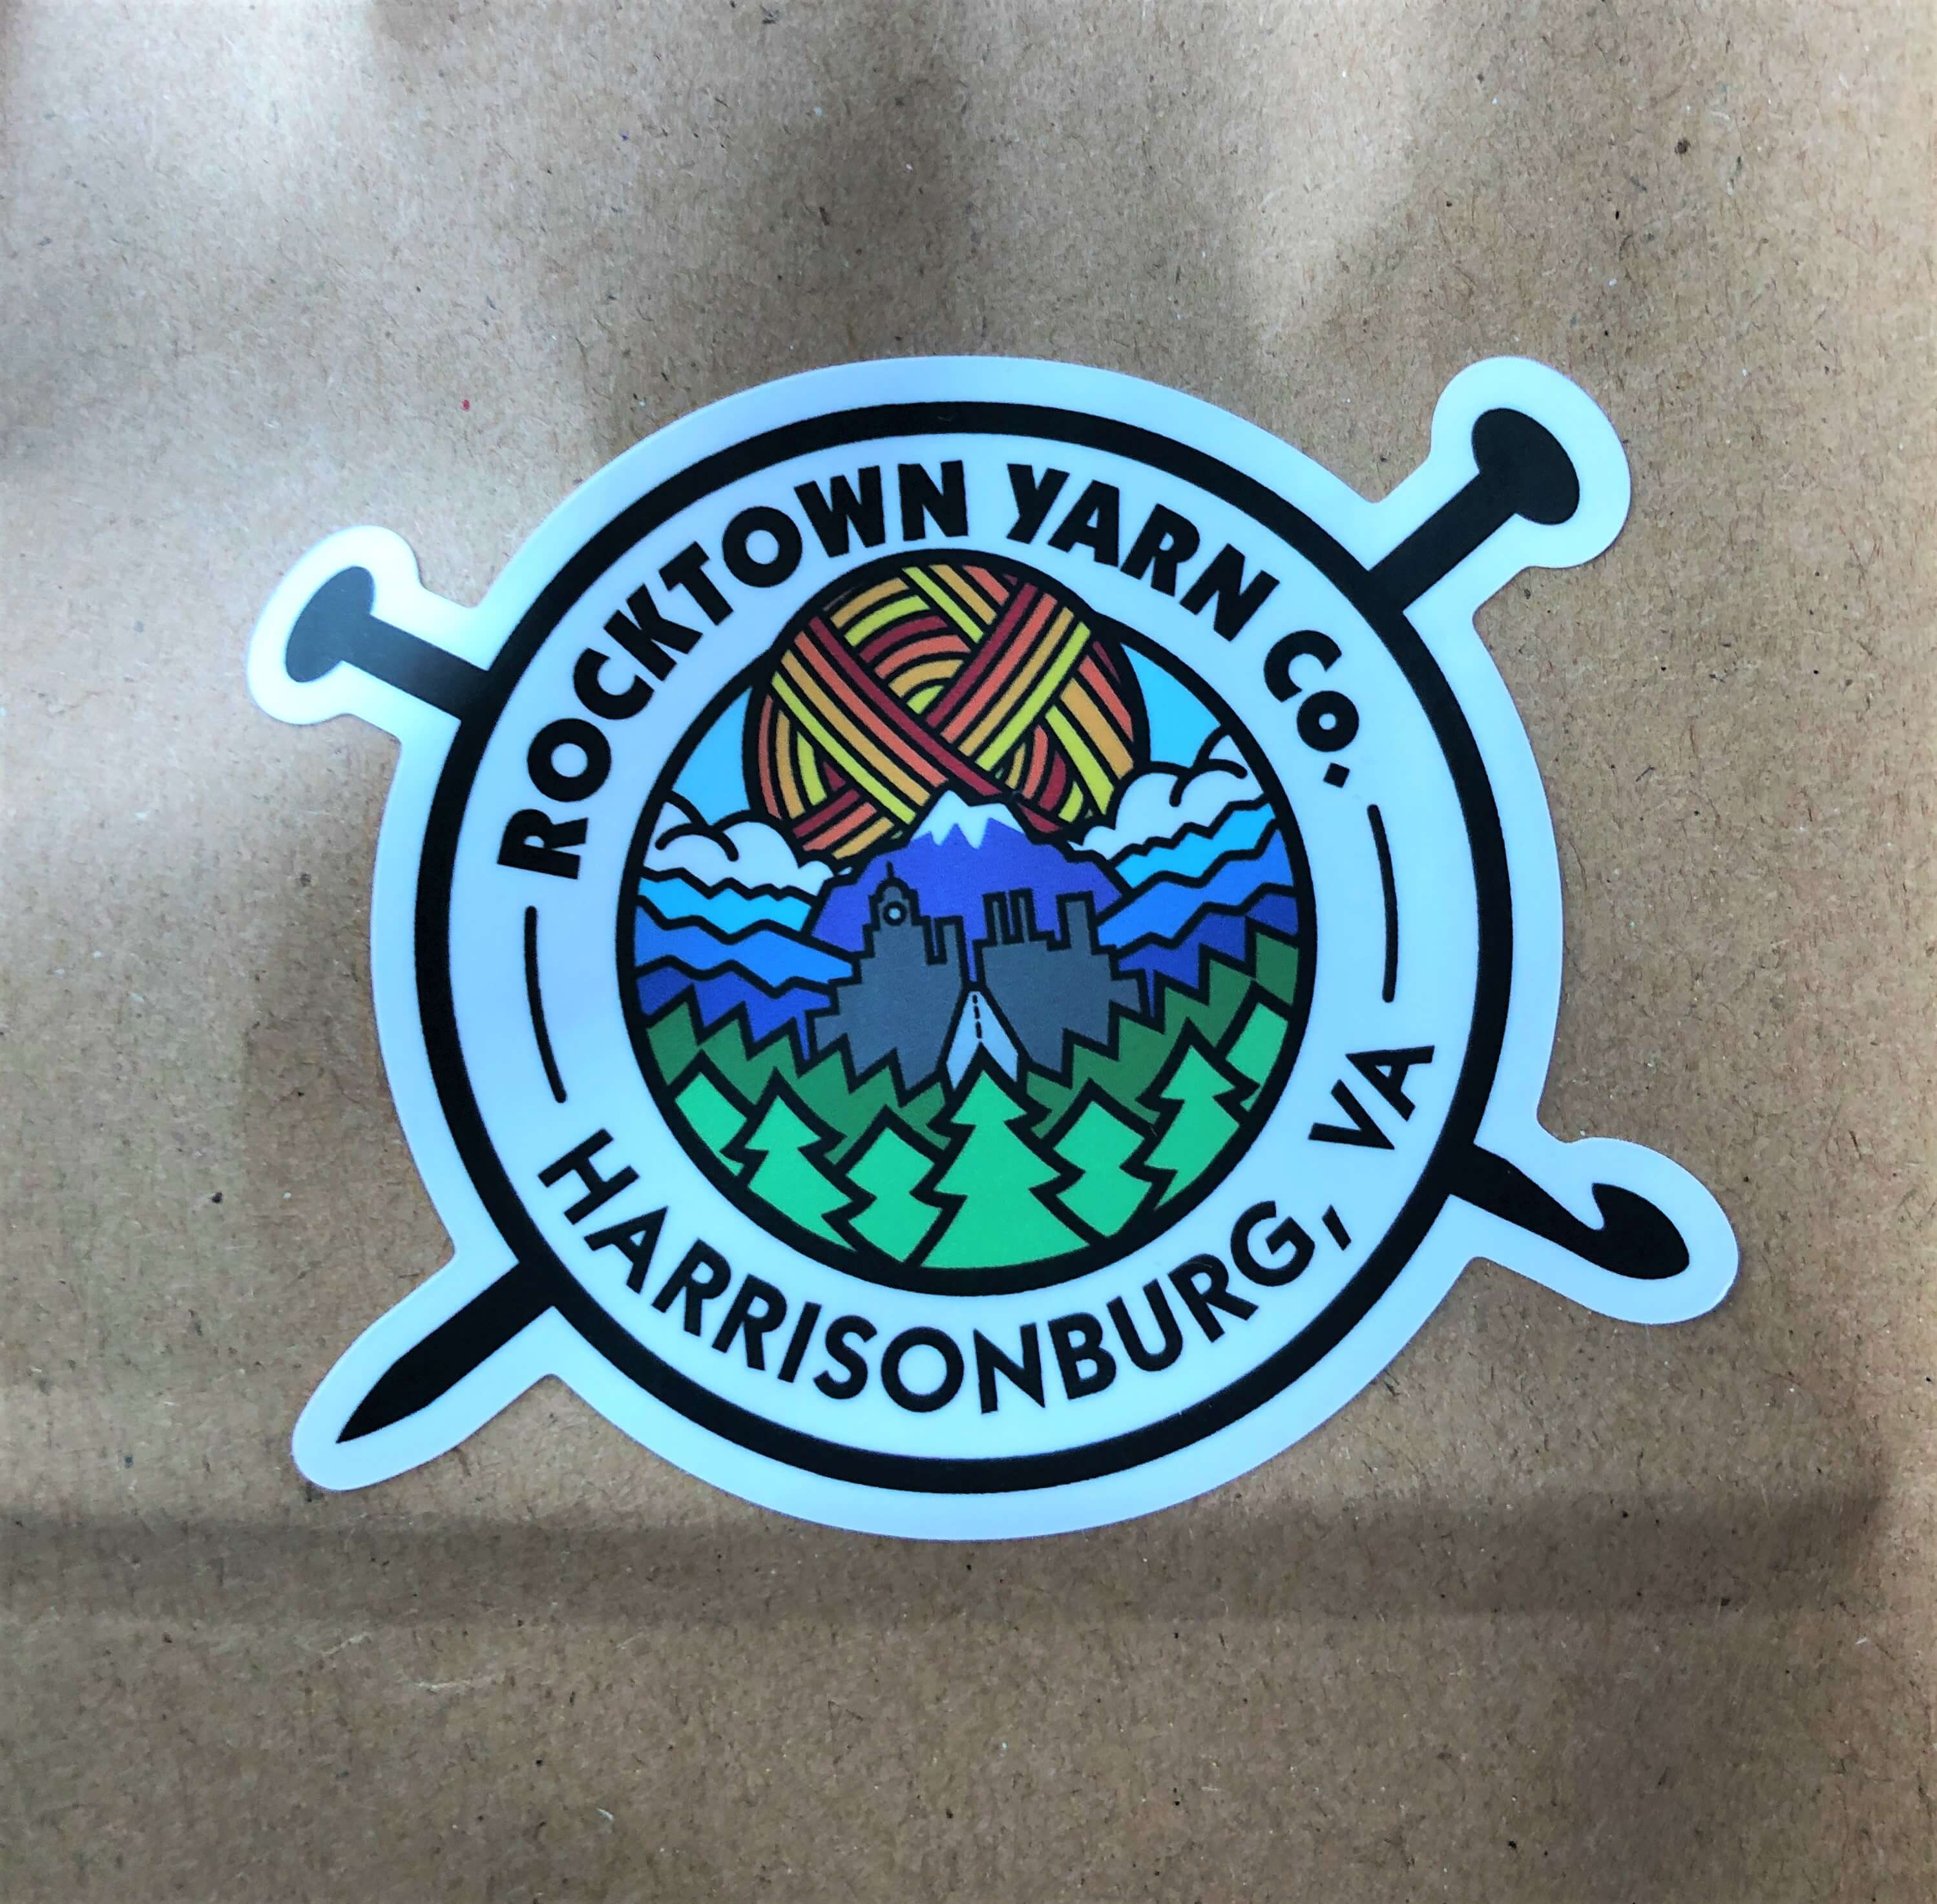 a Rocktown Yarn logo sticker reads "Rocktown Yarn Co. - Harrisonburg, VA" and shows a sun skein rising over a city